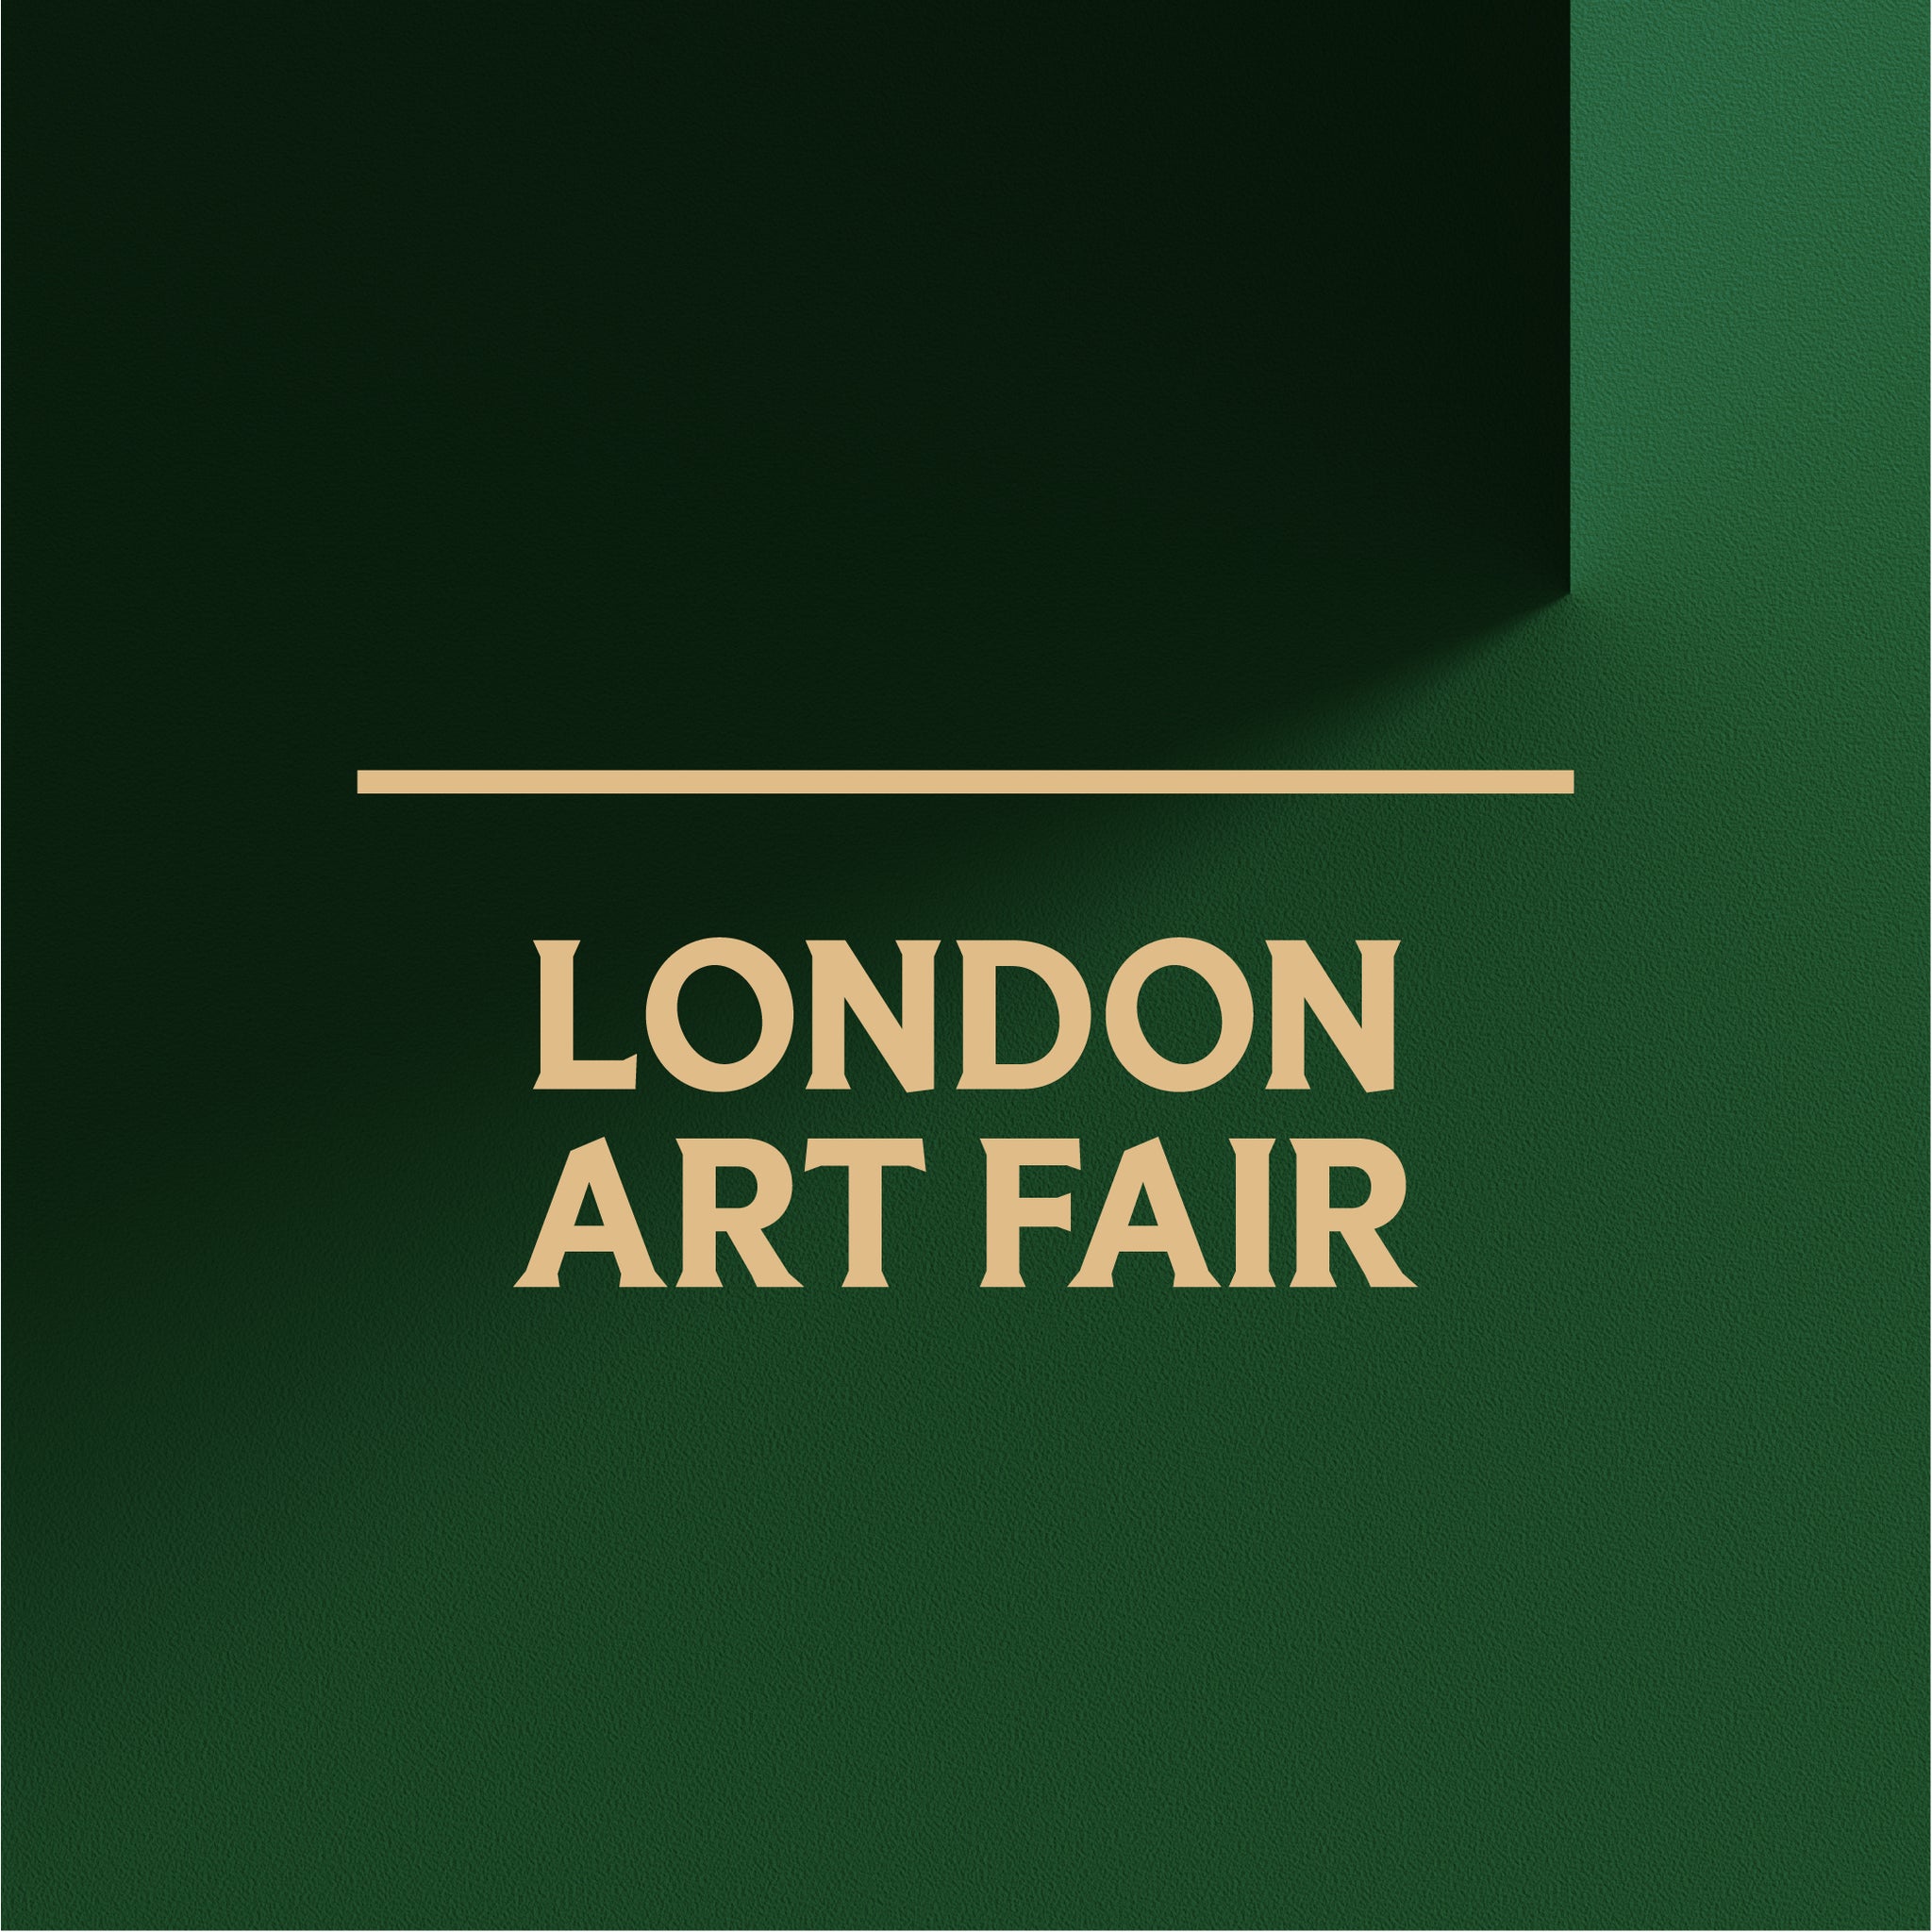 London Art Fair: Edit